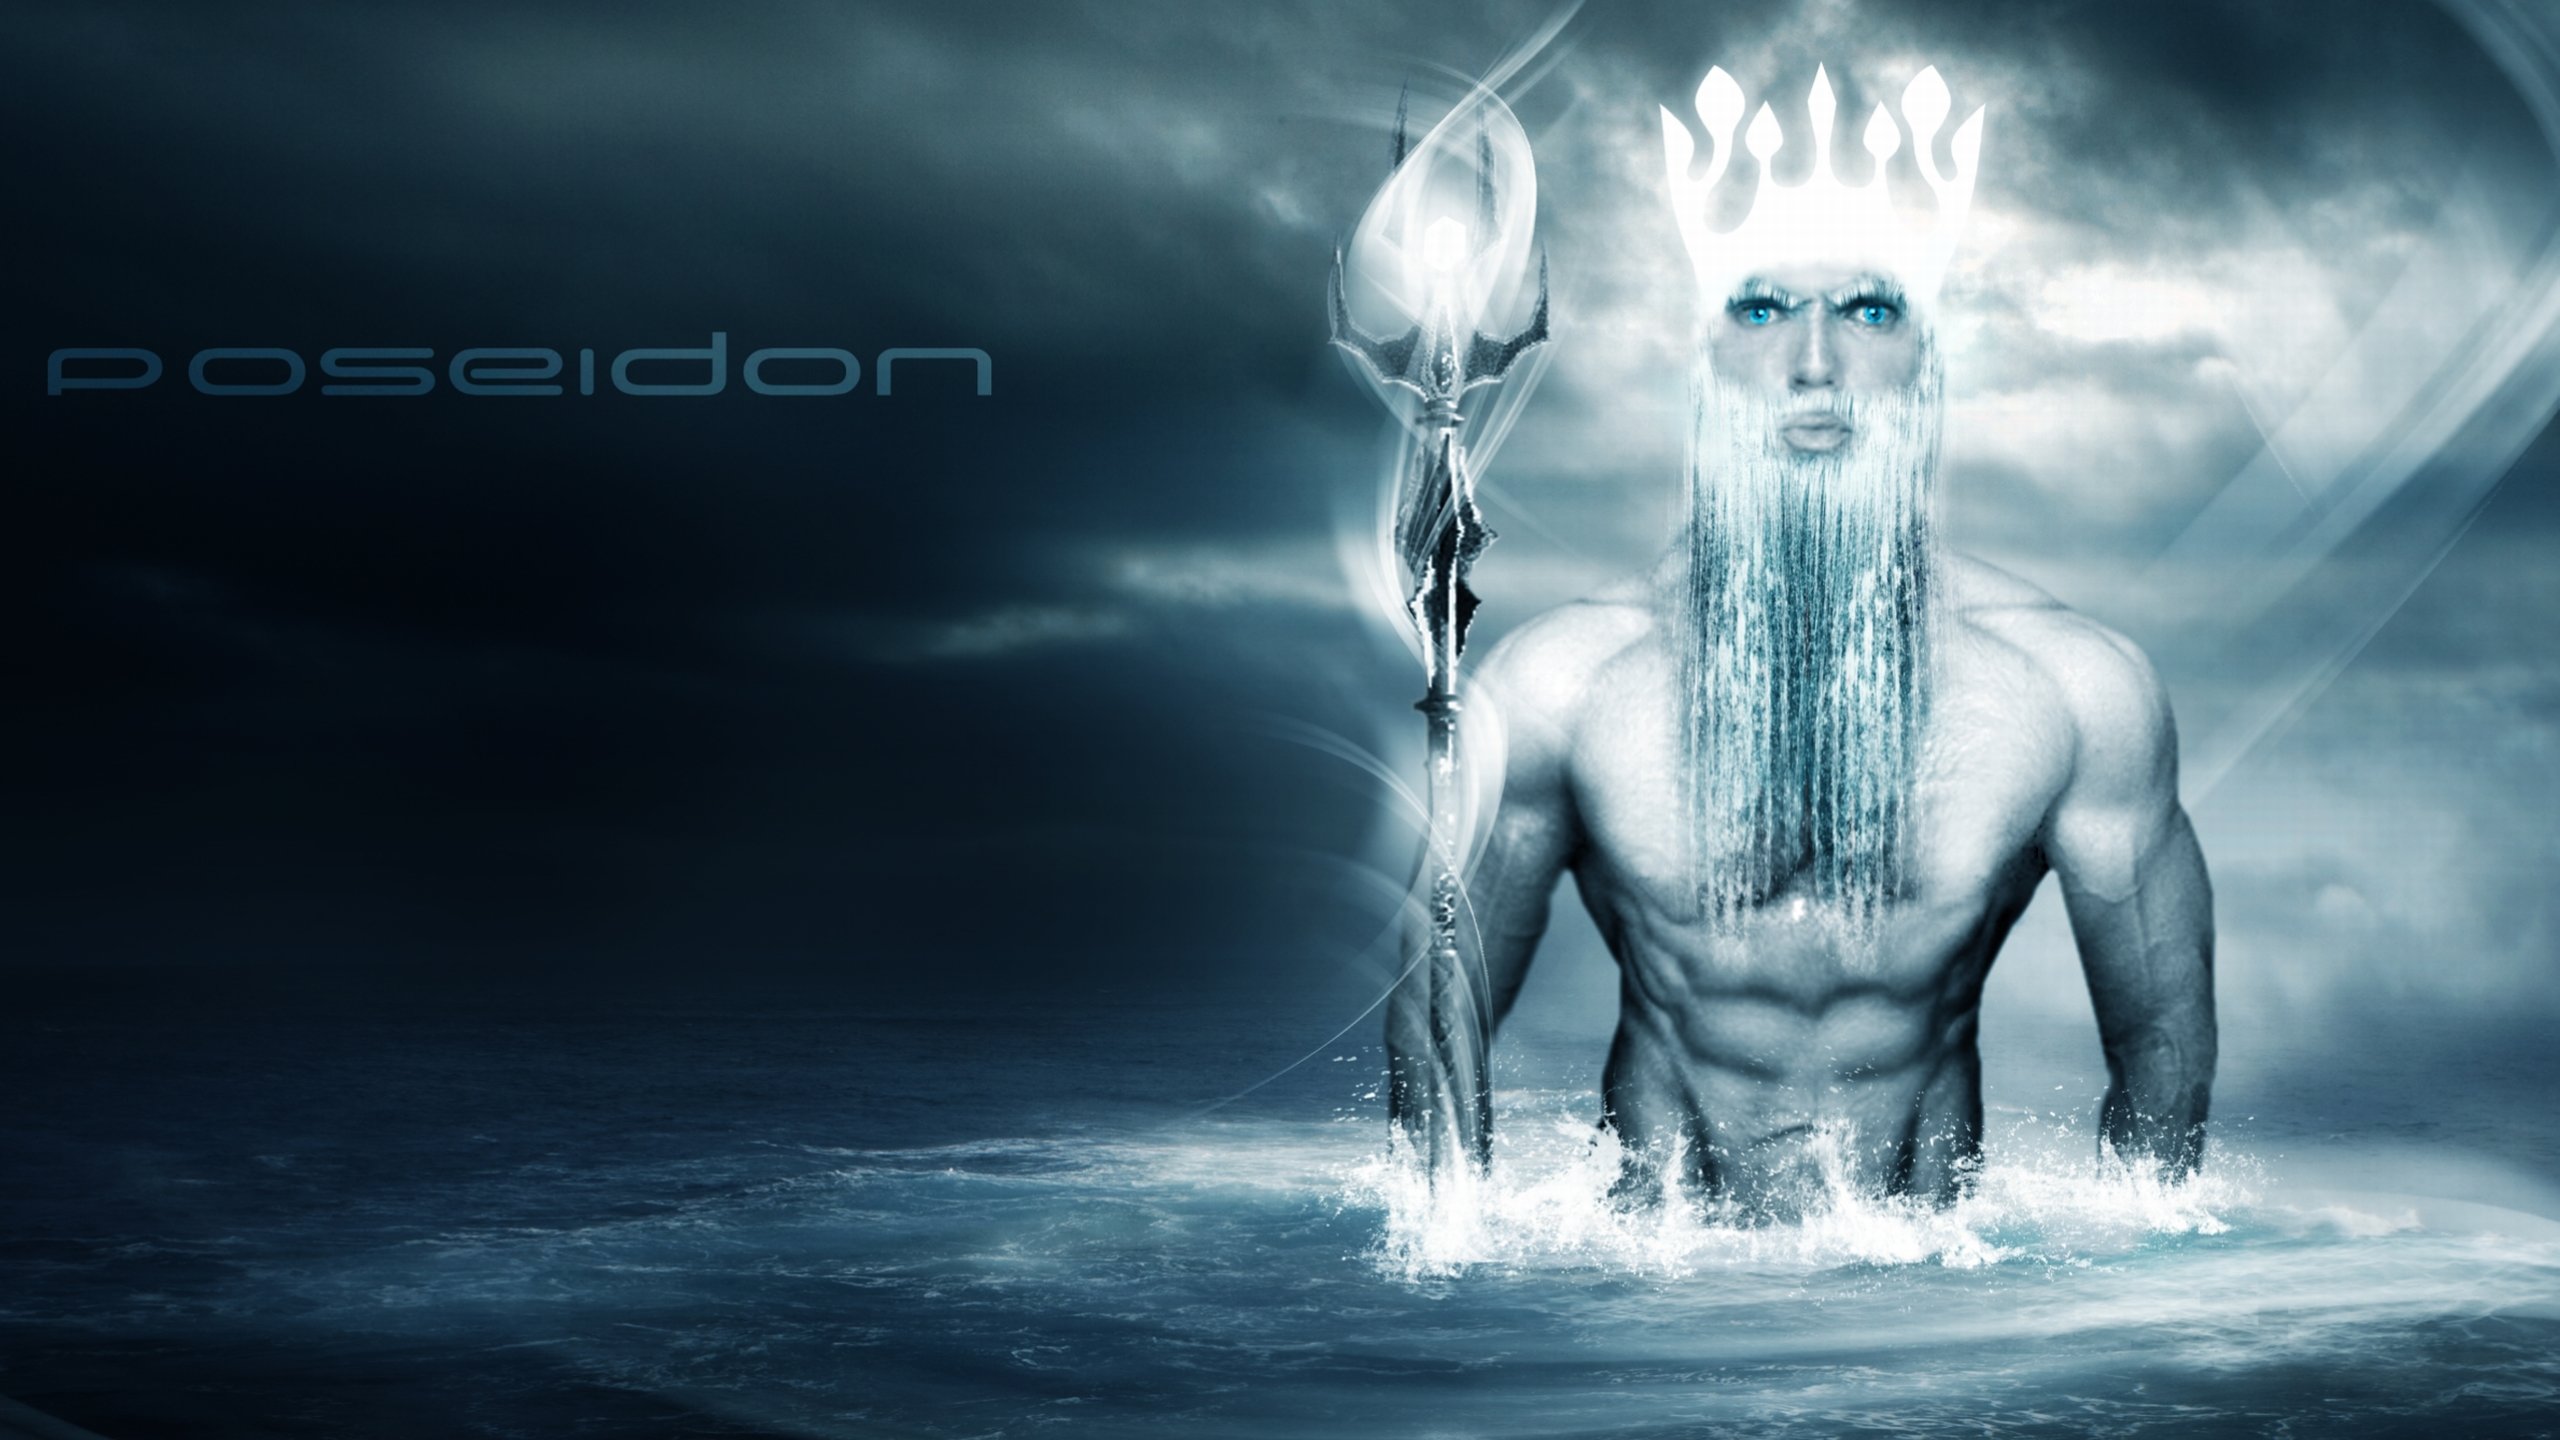 Download hd 2560x1440 Poseidon desktop wallpaper ID:162762 for free